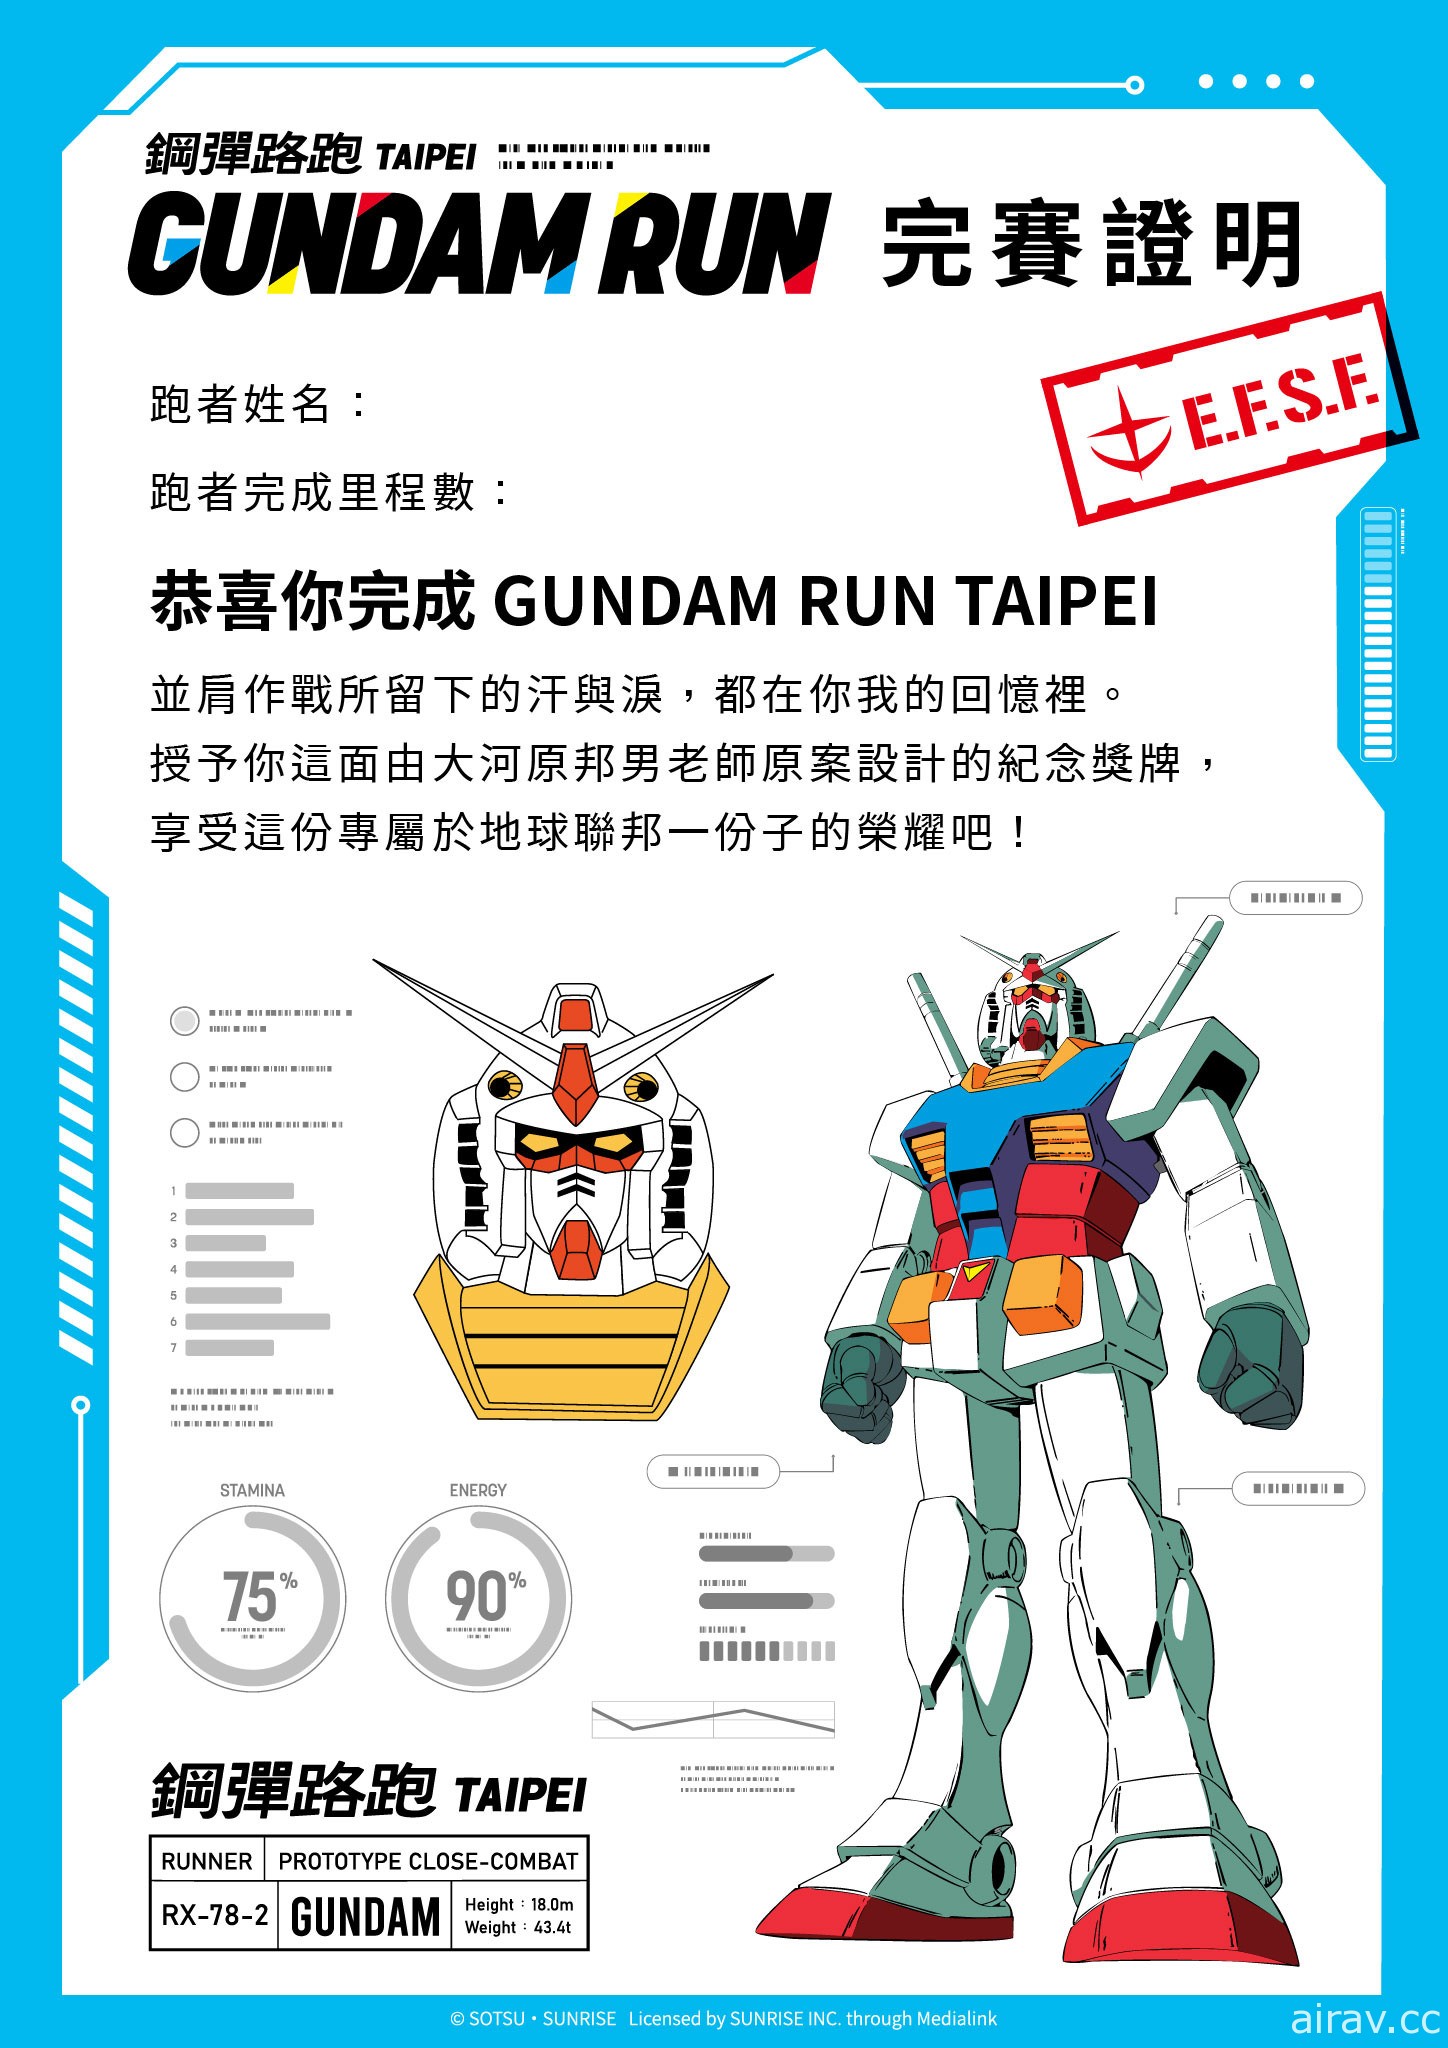 「鋼彈路跑 GUNDAM RUN TAIPEI」即日起開放報名 10 月正式展開活動